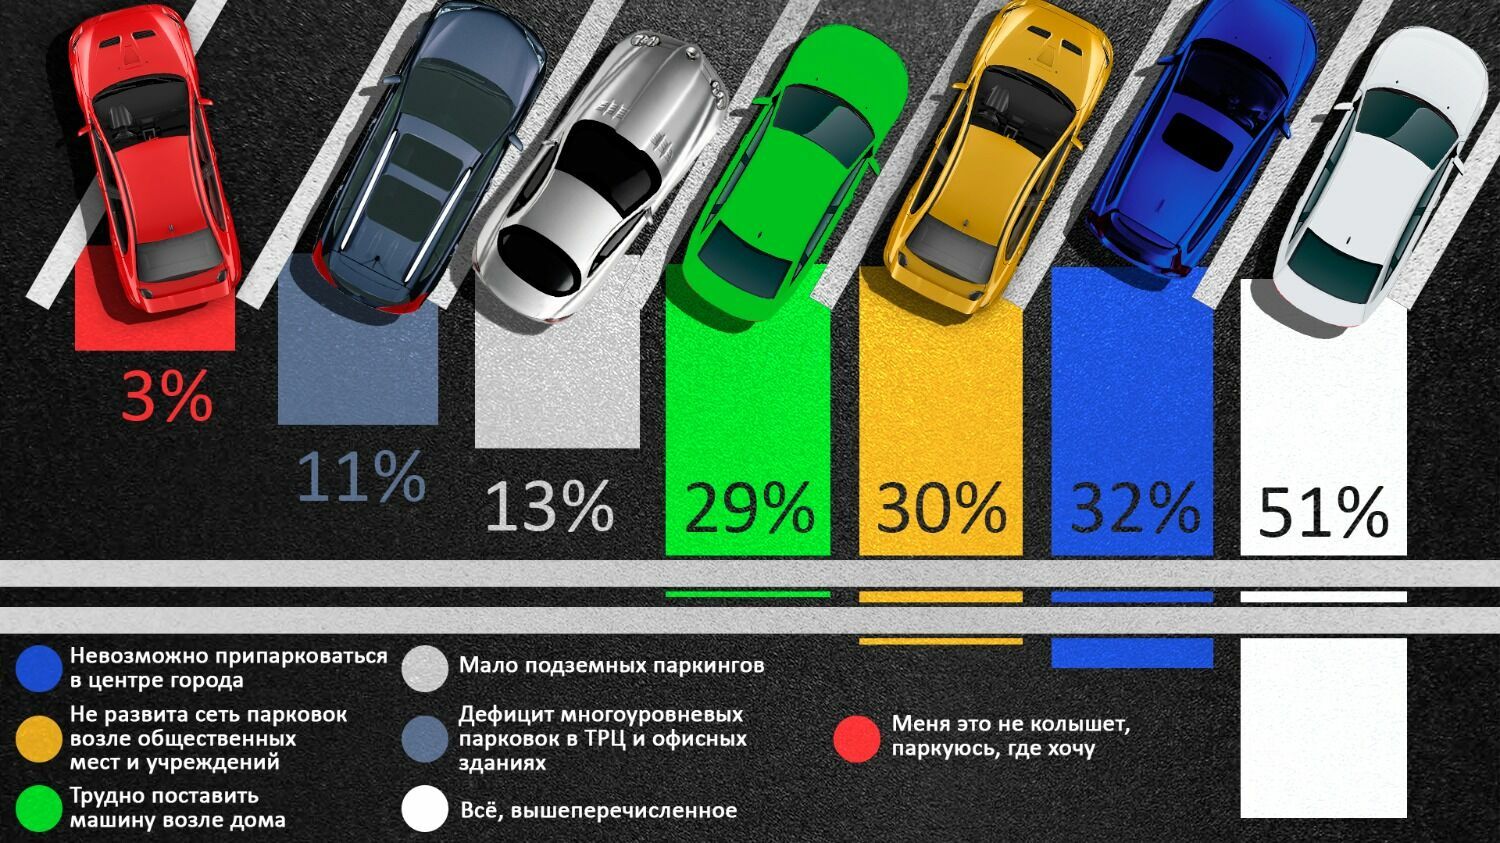 Каждый второй волгоградский водитель видит несколько проблем, связанных с парковками